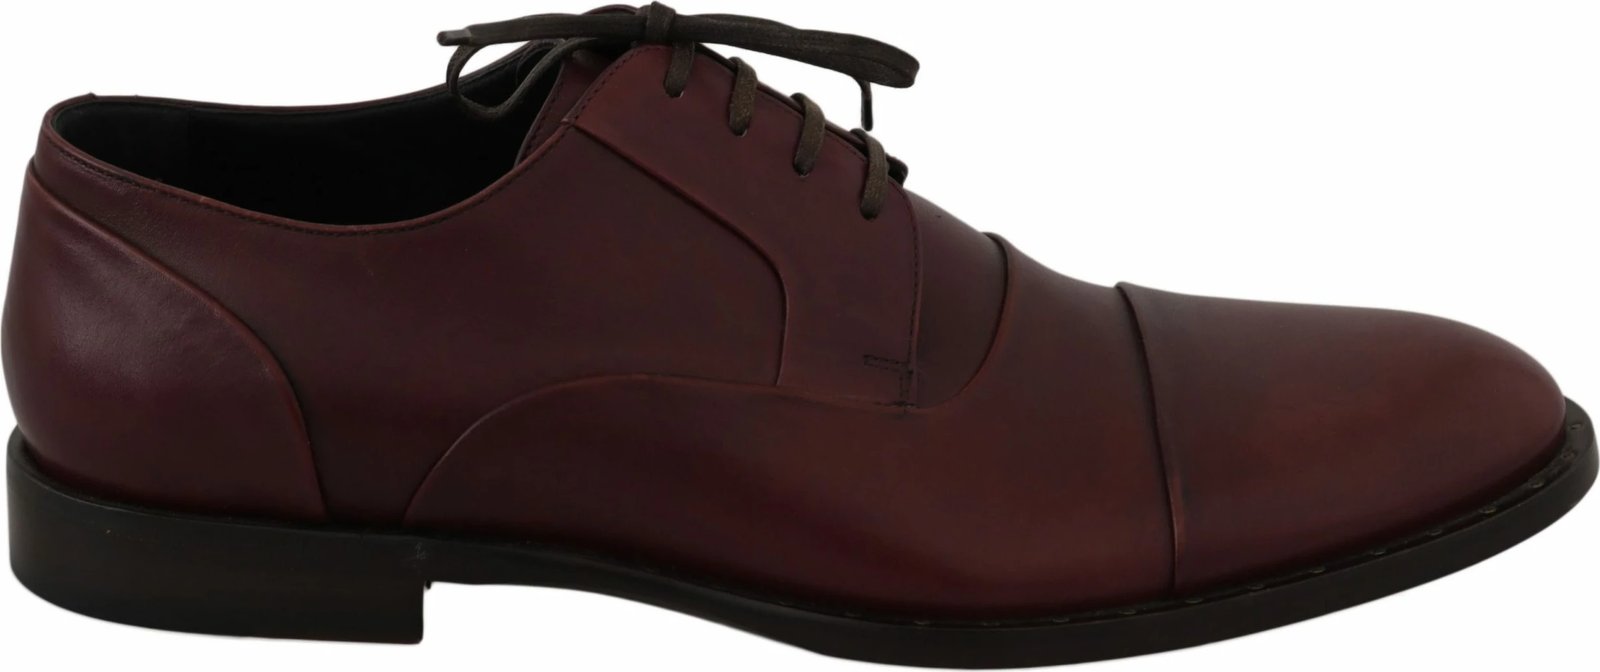 Këpucë për meshkuj Dolce & Gabbana, të kuqe 